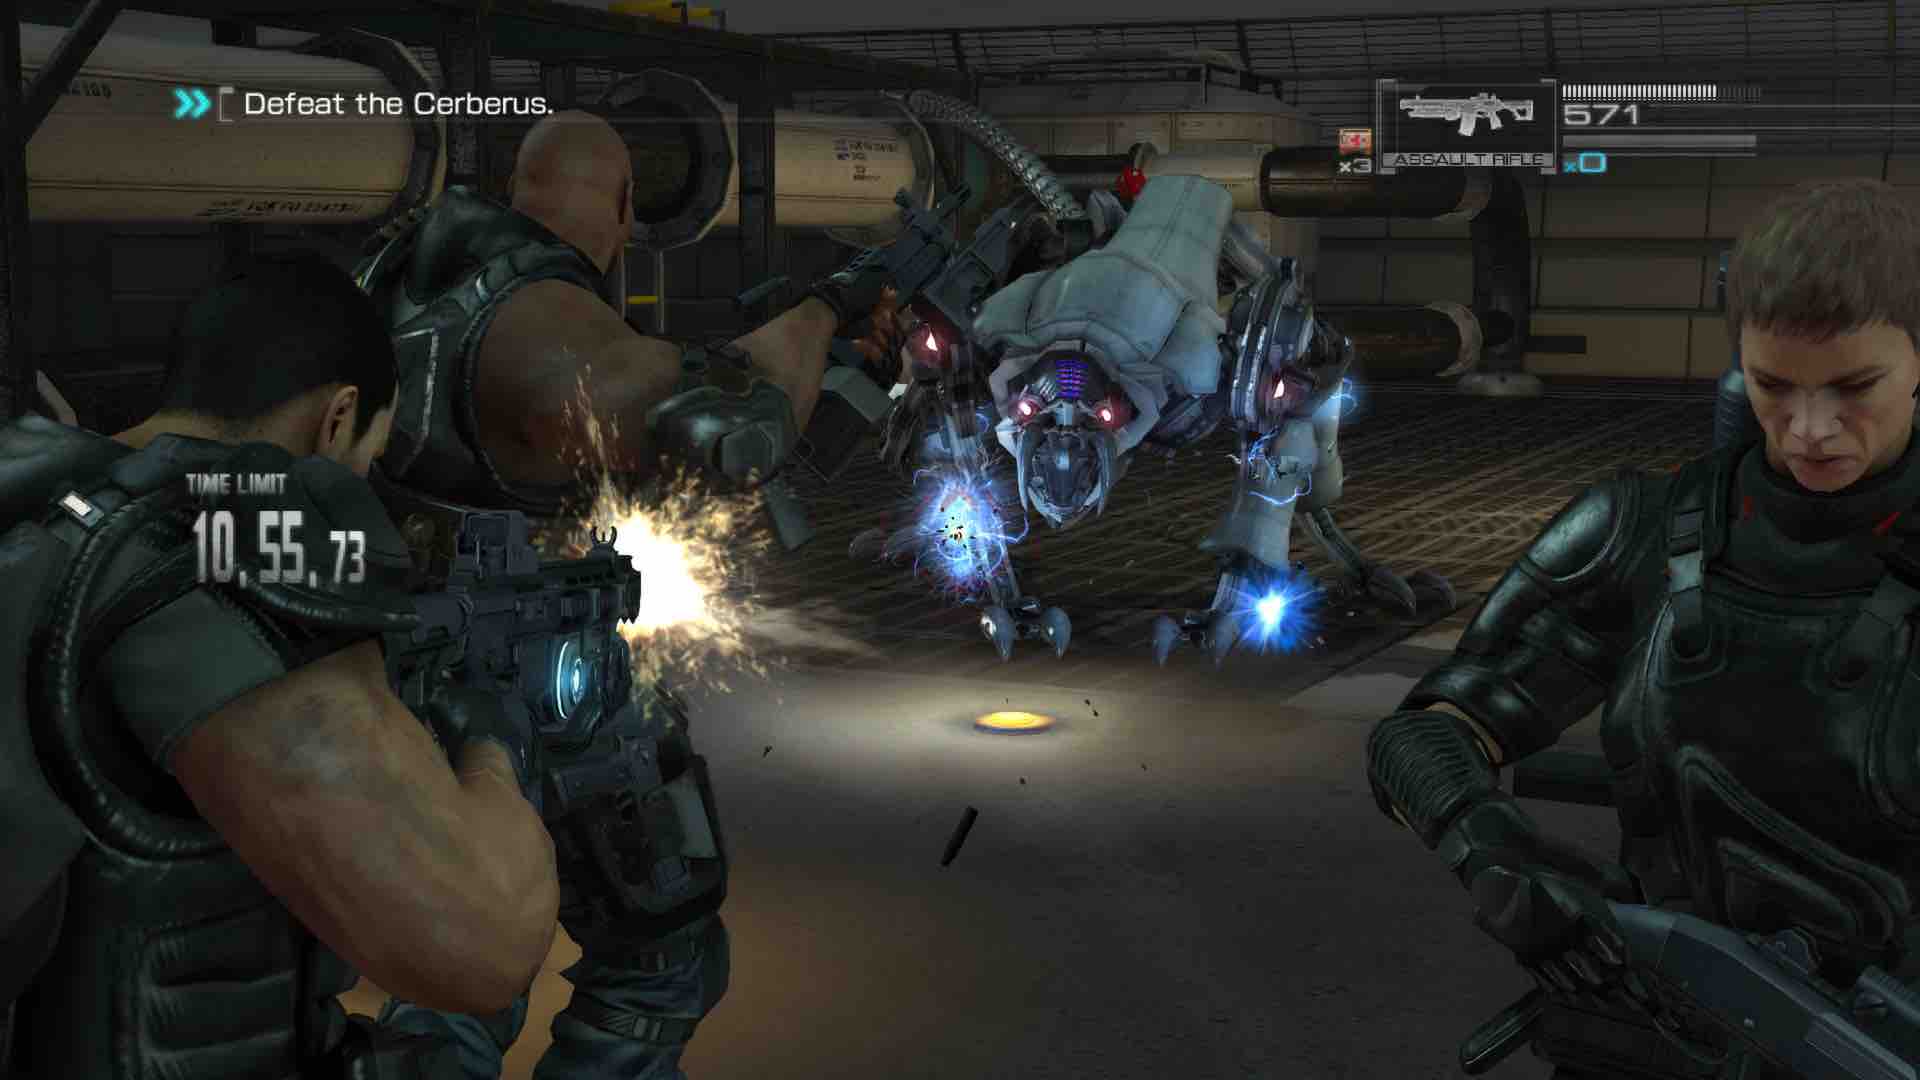 WipEout Omega e Sniper Elite 4 são os jogos grátis da PS Plus em